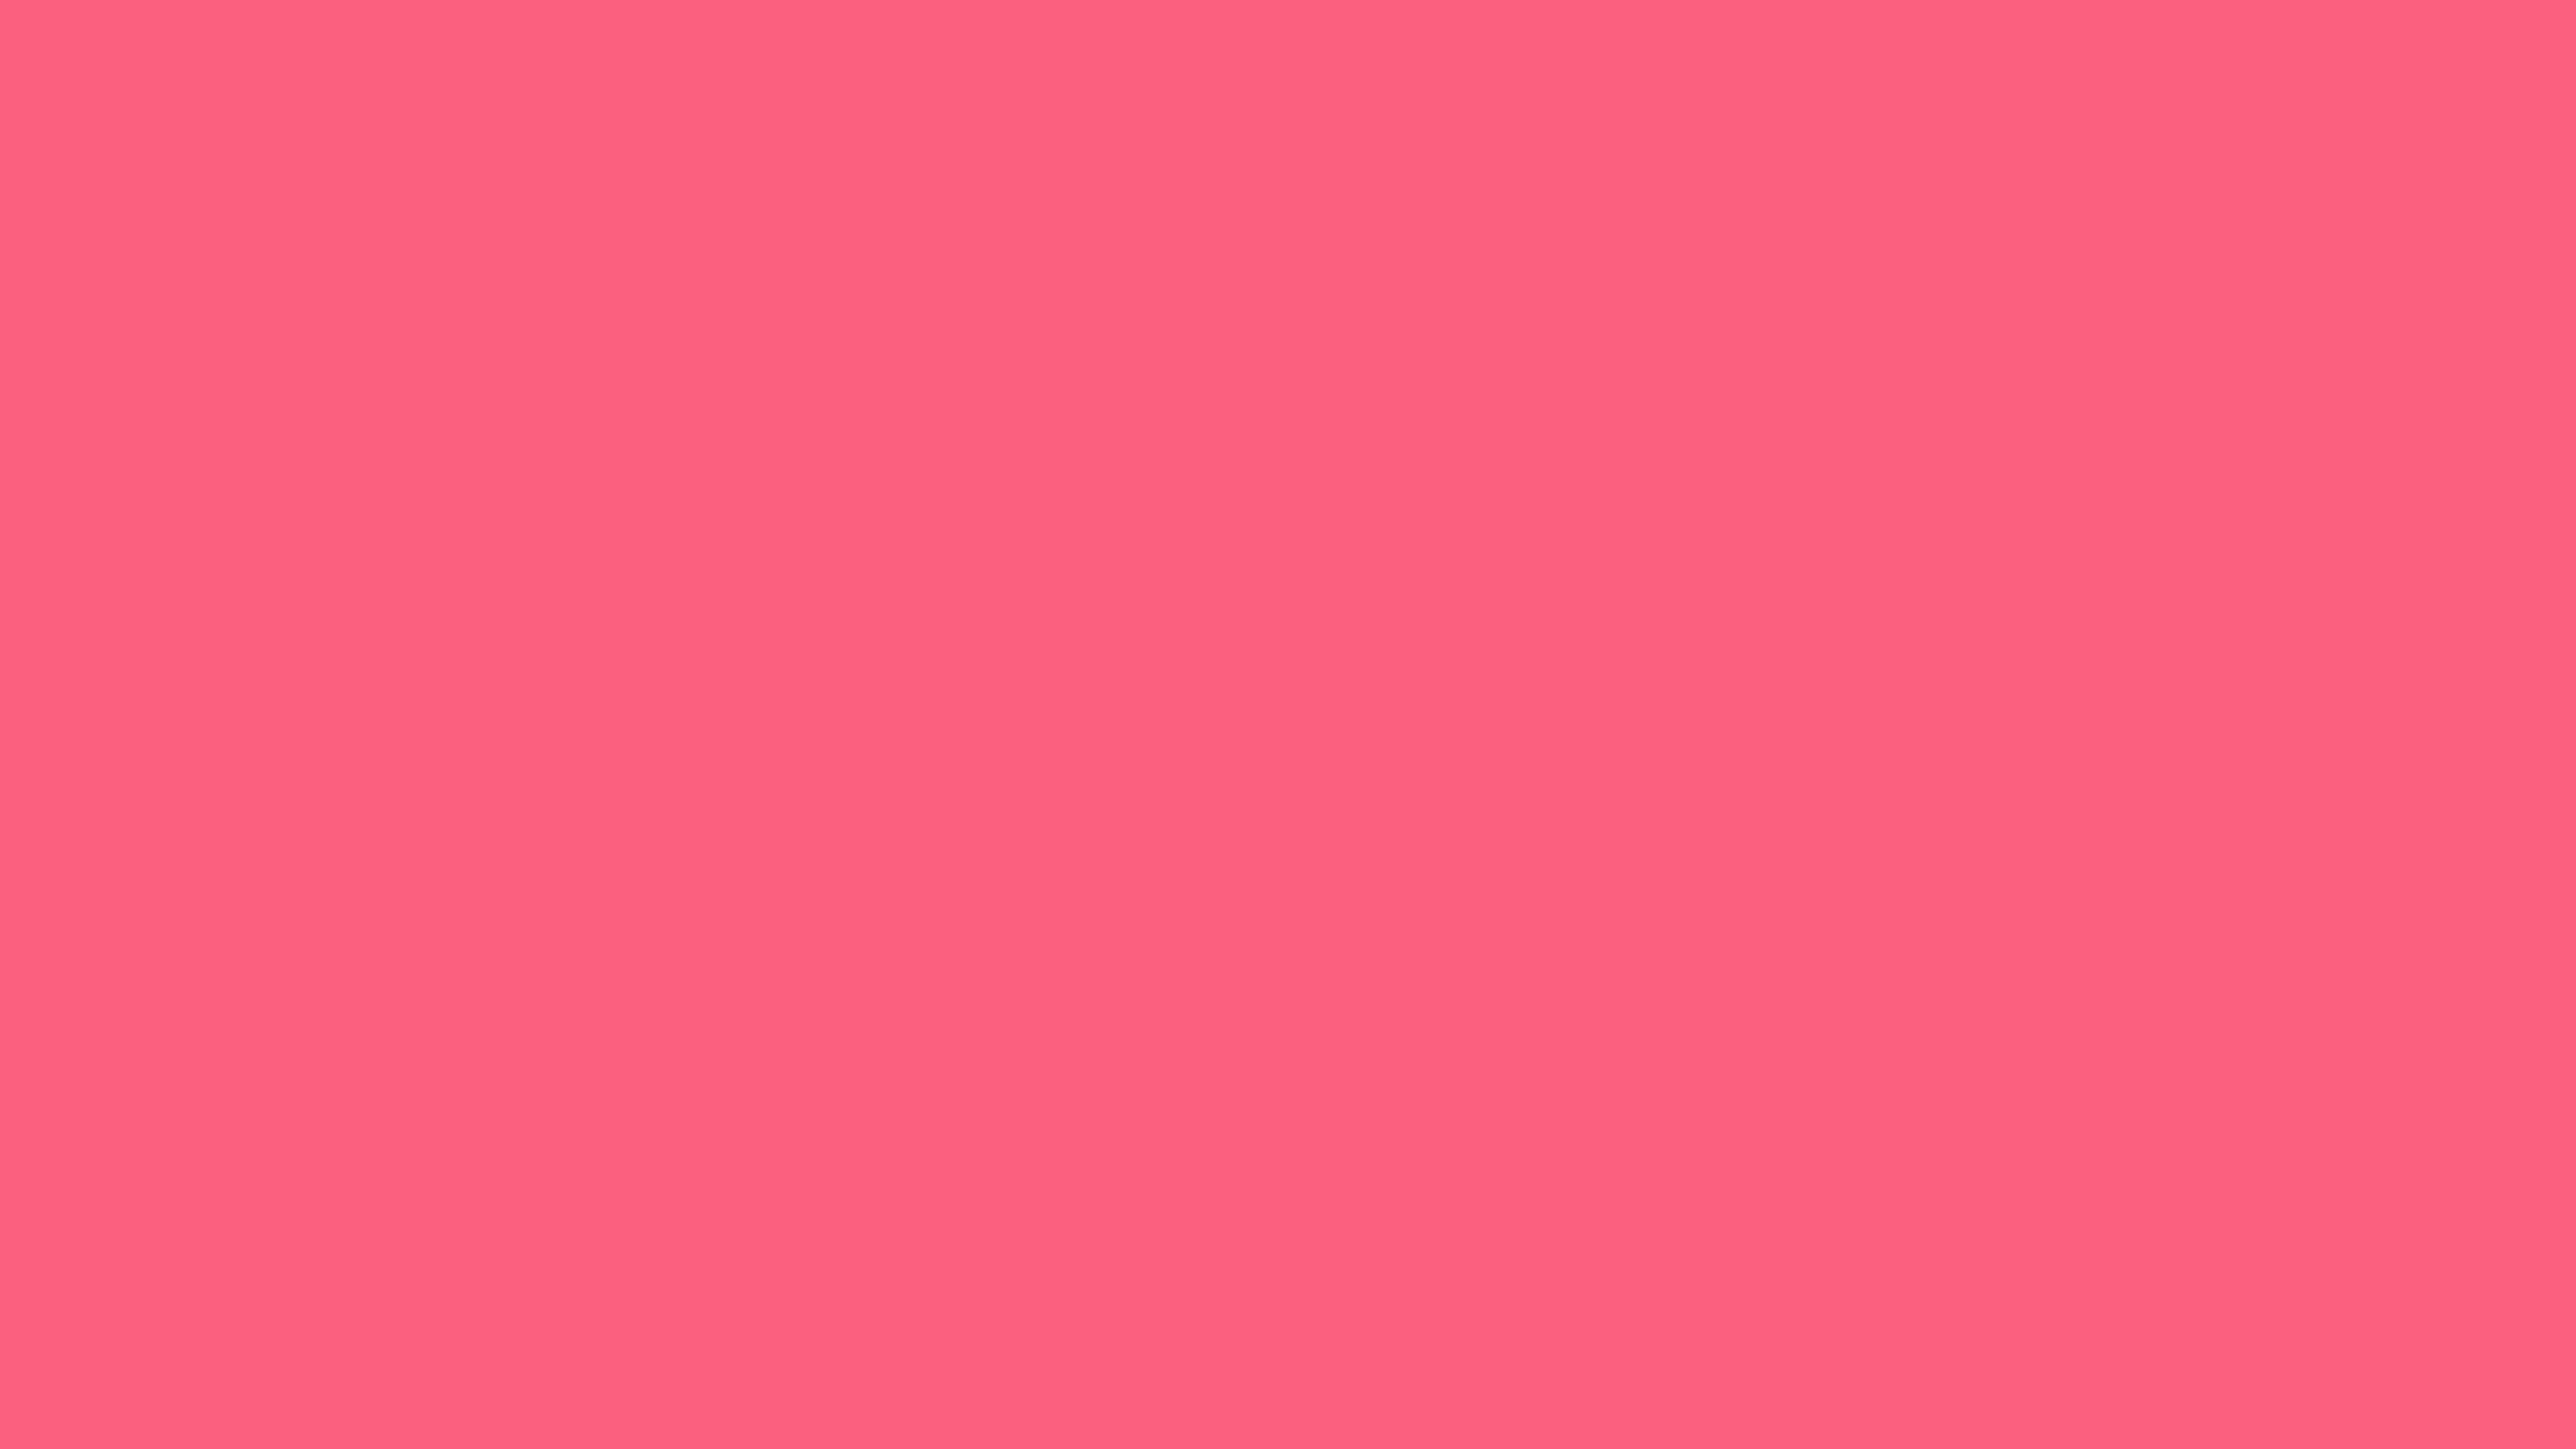 5120x2880 Brink Pink Solid Color Background